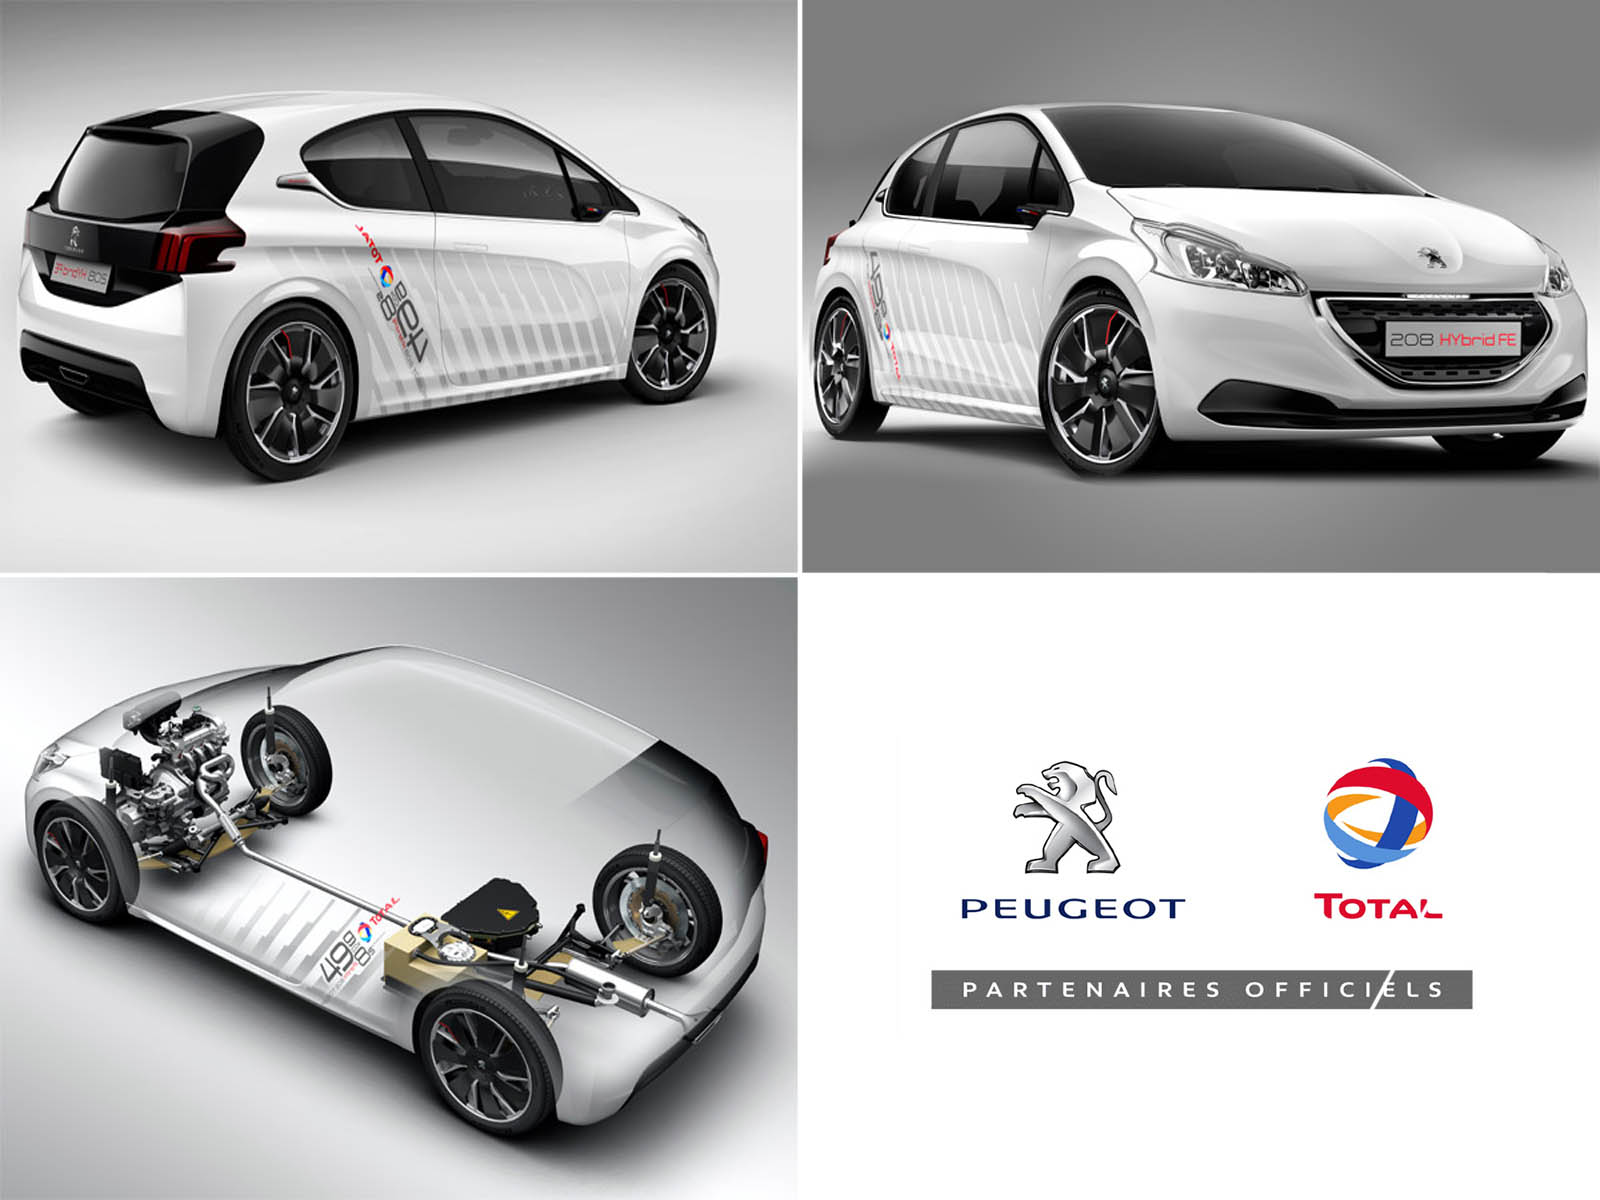 Peugeot & total partner